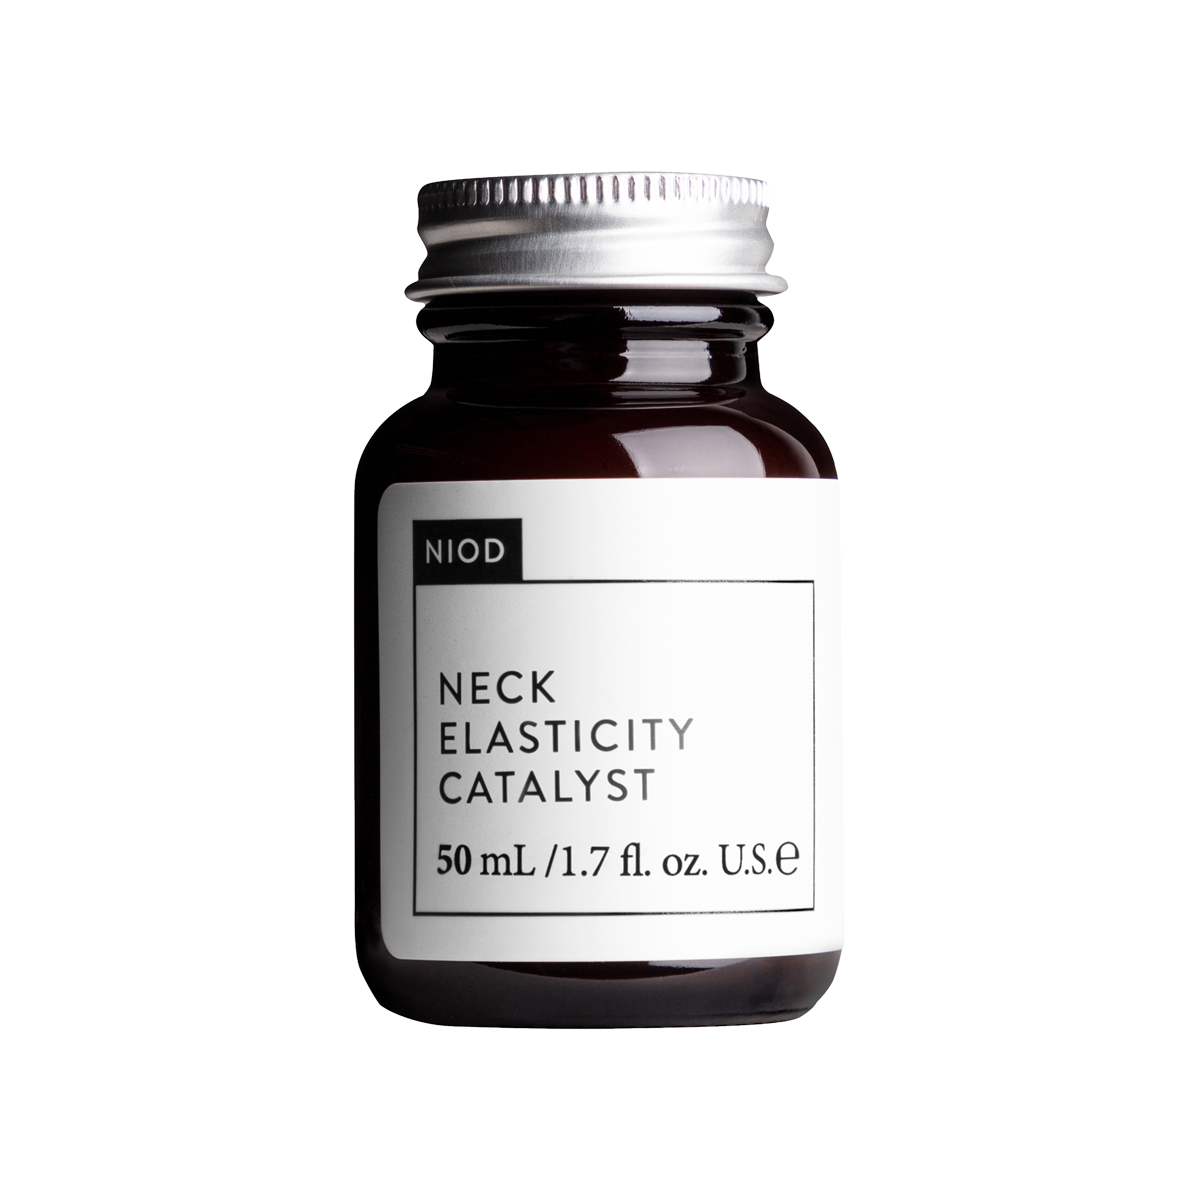 NIOD - Neck Elasticity Catalyst Serum